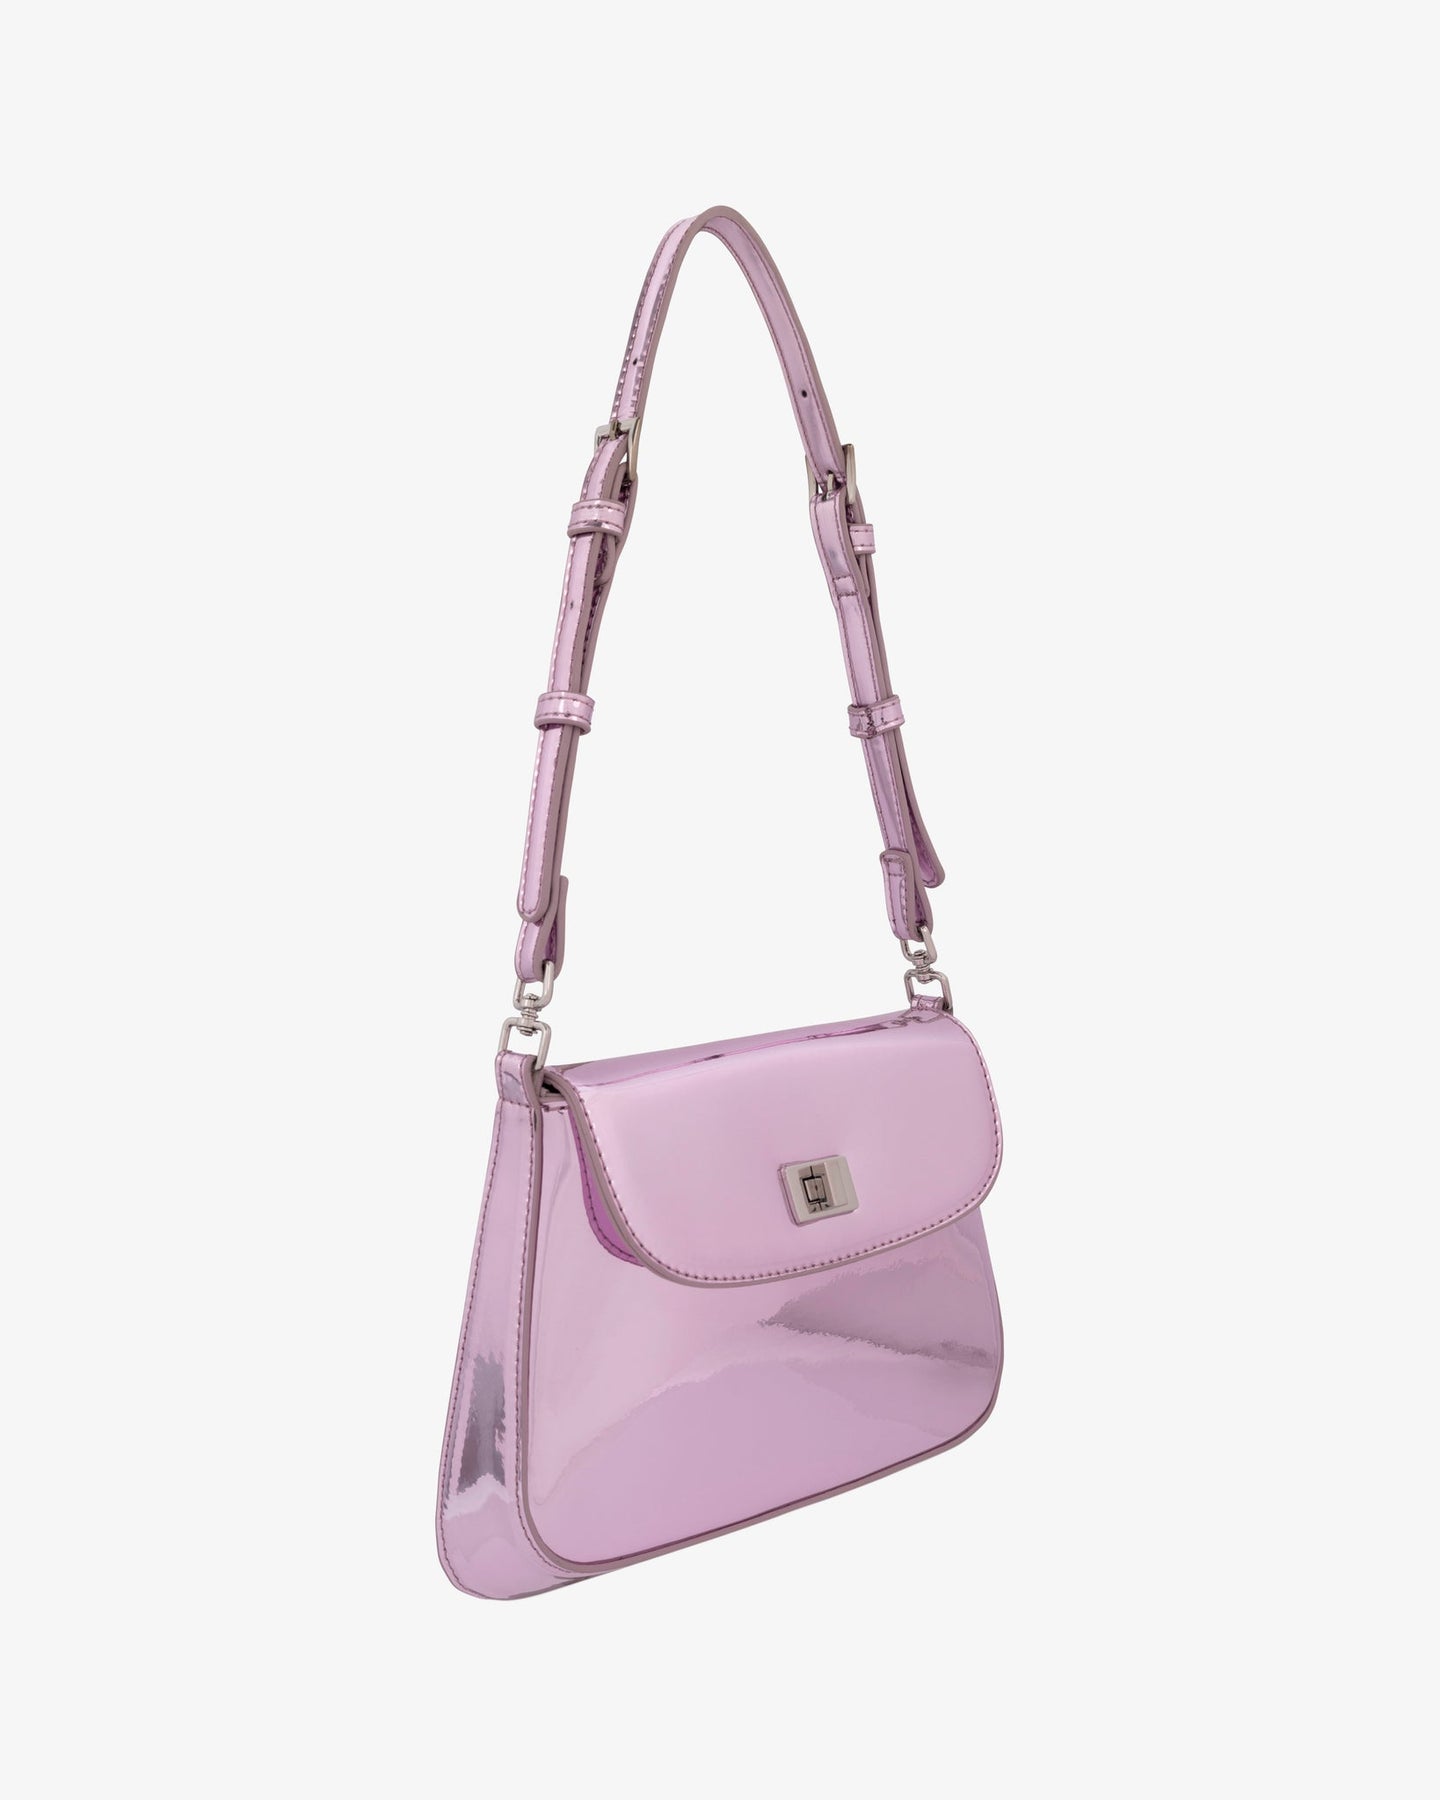 Mila Bag in Metallic Pink